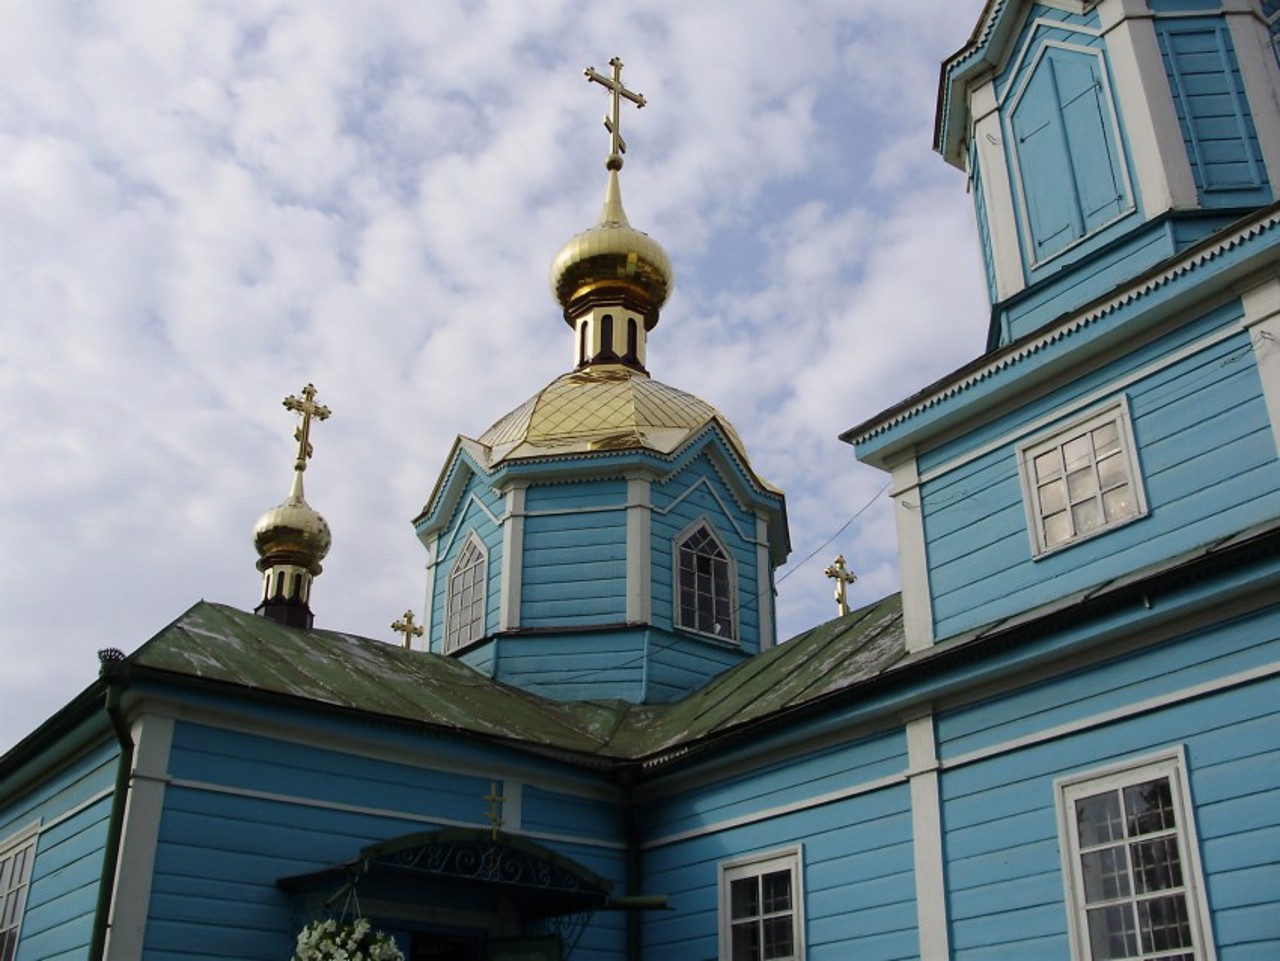 Oleksandr Nevsky Church, Kostopil